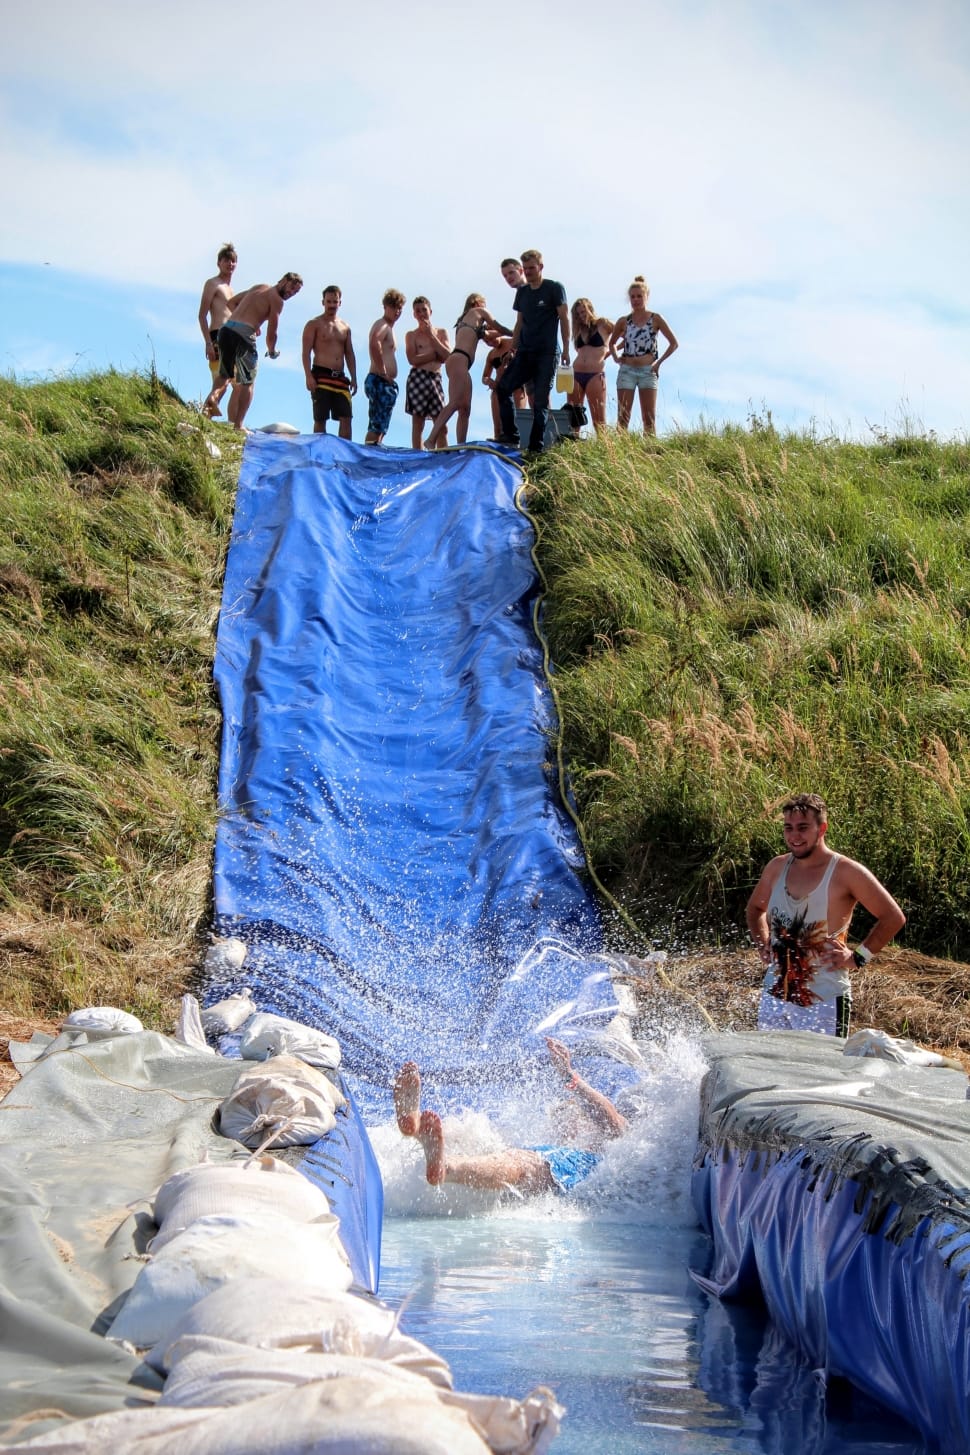 Water Slide, Slope, Fun, Eigenbau, Slip, large group of people, adult preview